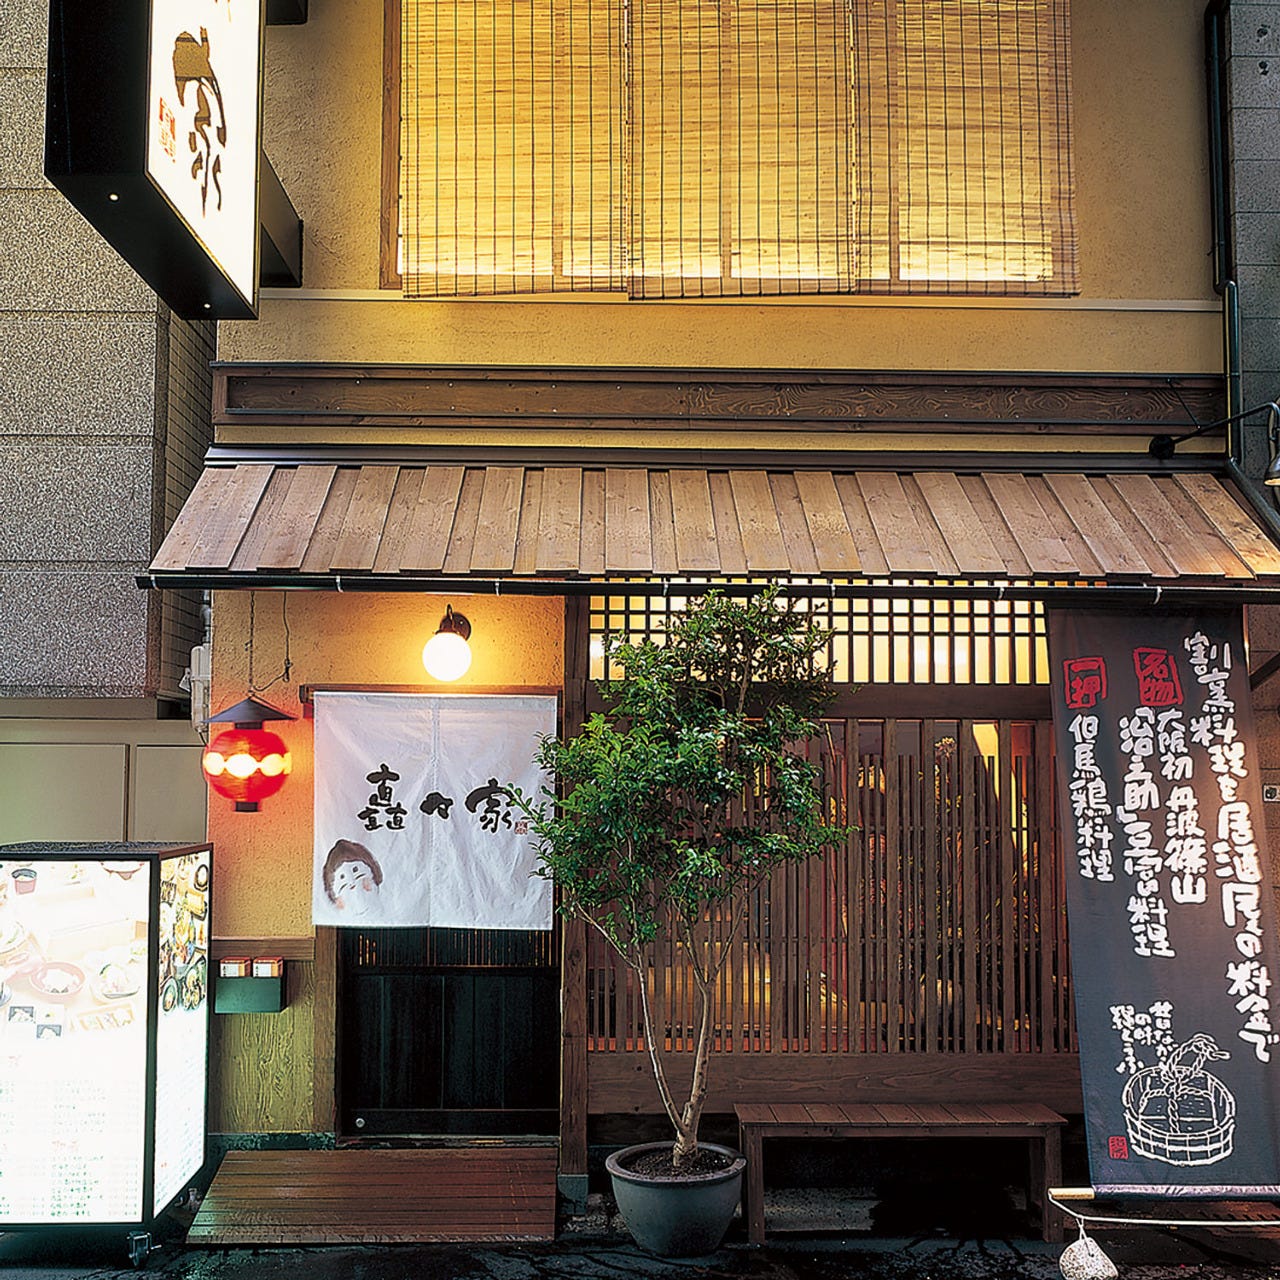 和食料理店ならではの趣きが感じらる「矗々家」外観